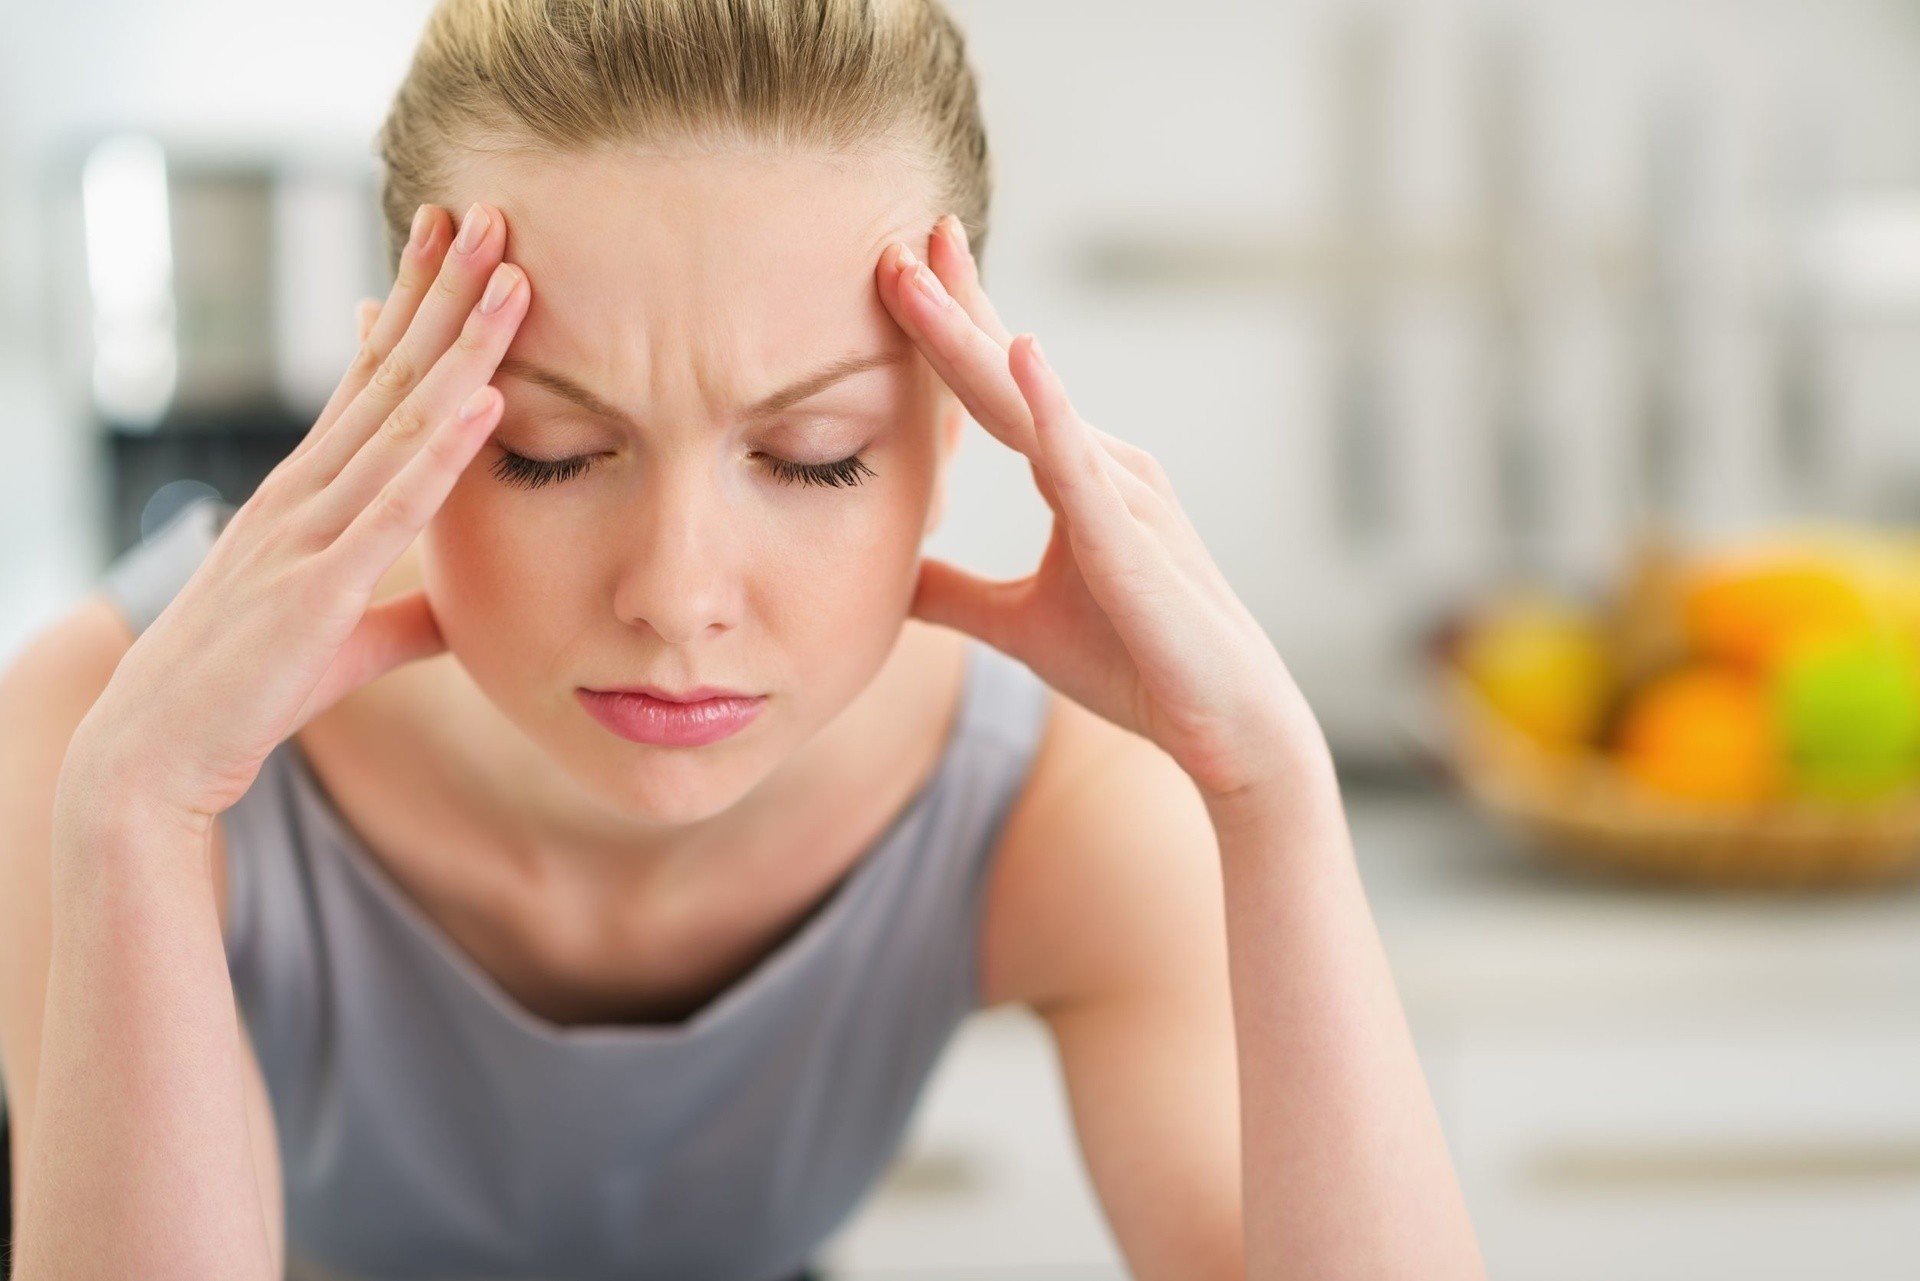 Ból głowy w skroniach – przyczyny i leczenie. Co może oznaczać ból skroni,  czoła i oczu oraz kiedy należy wezwać pogotowie? | Strona Zdrowia